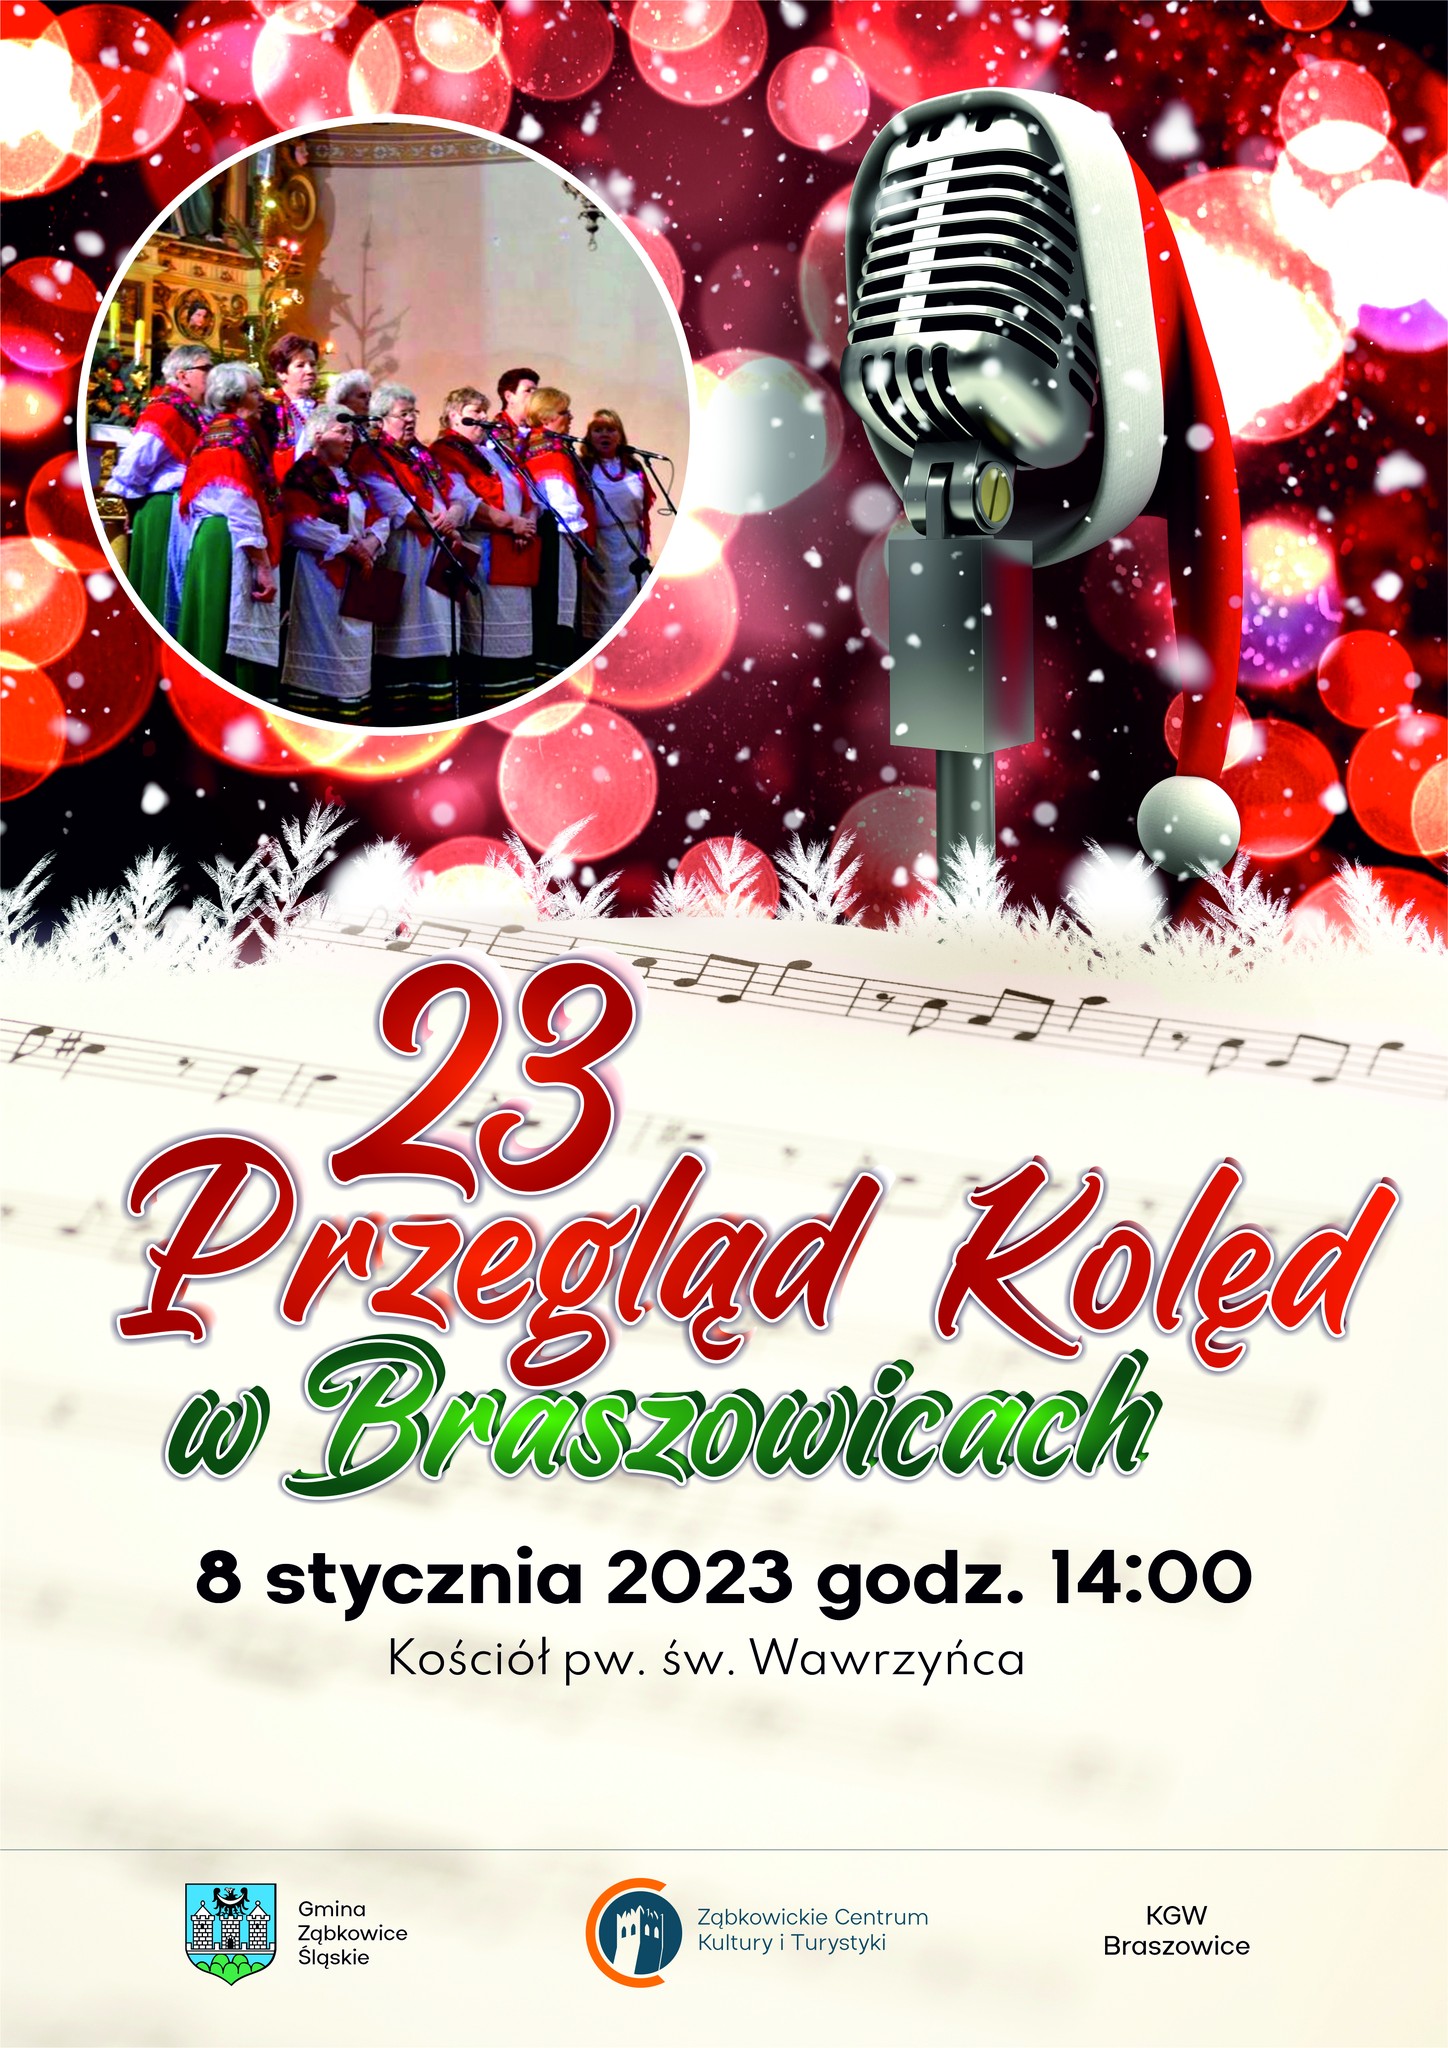 Plakat informacyjny o 23 Przeglądzie Kolęd w Braszowicach 8 stycznia 2023 o godzinie 14:00 w Kościele pw. św. Wawrzyńca.